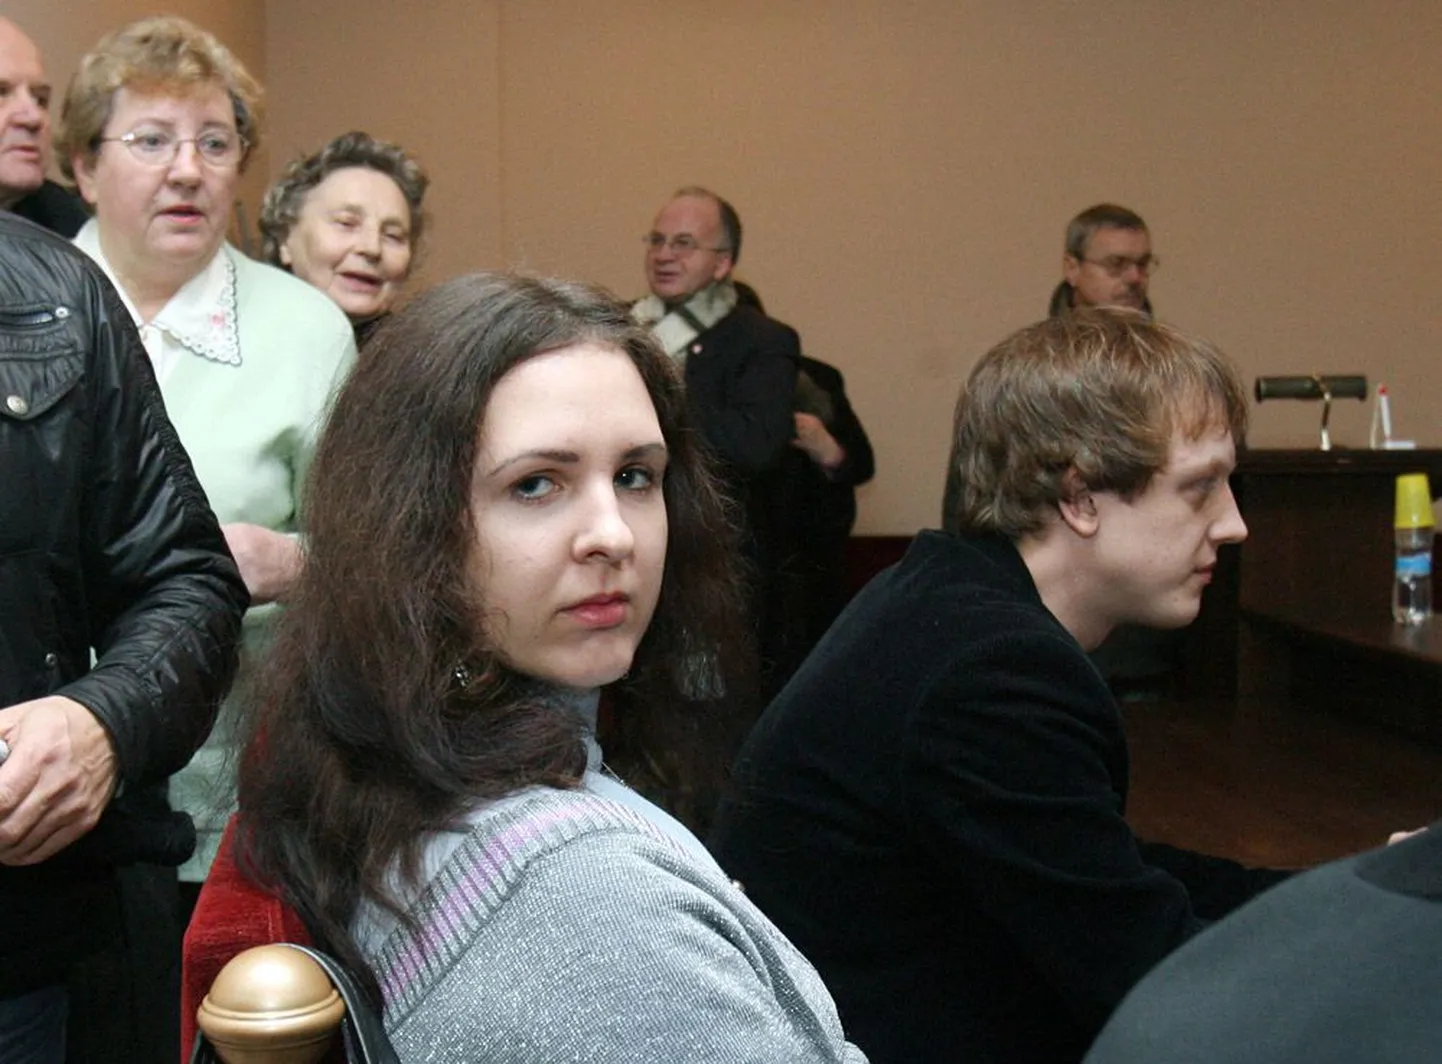 Eglė Kusaitė 2010. aastal kohtus.